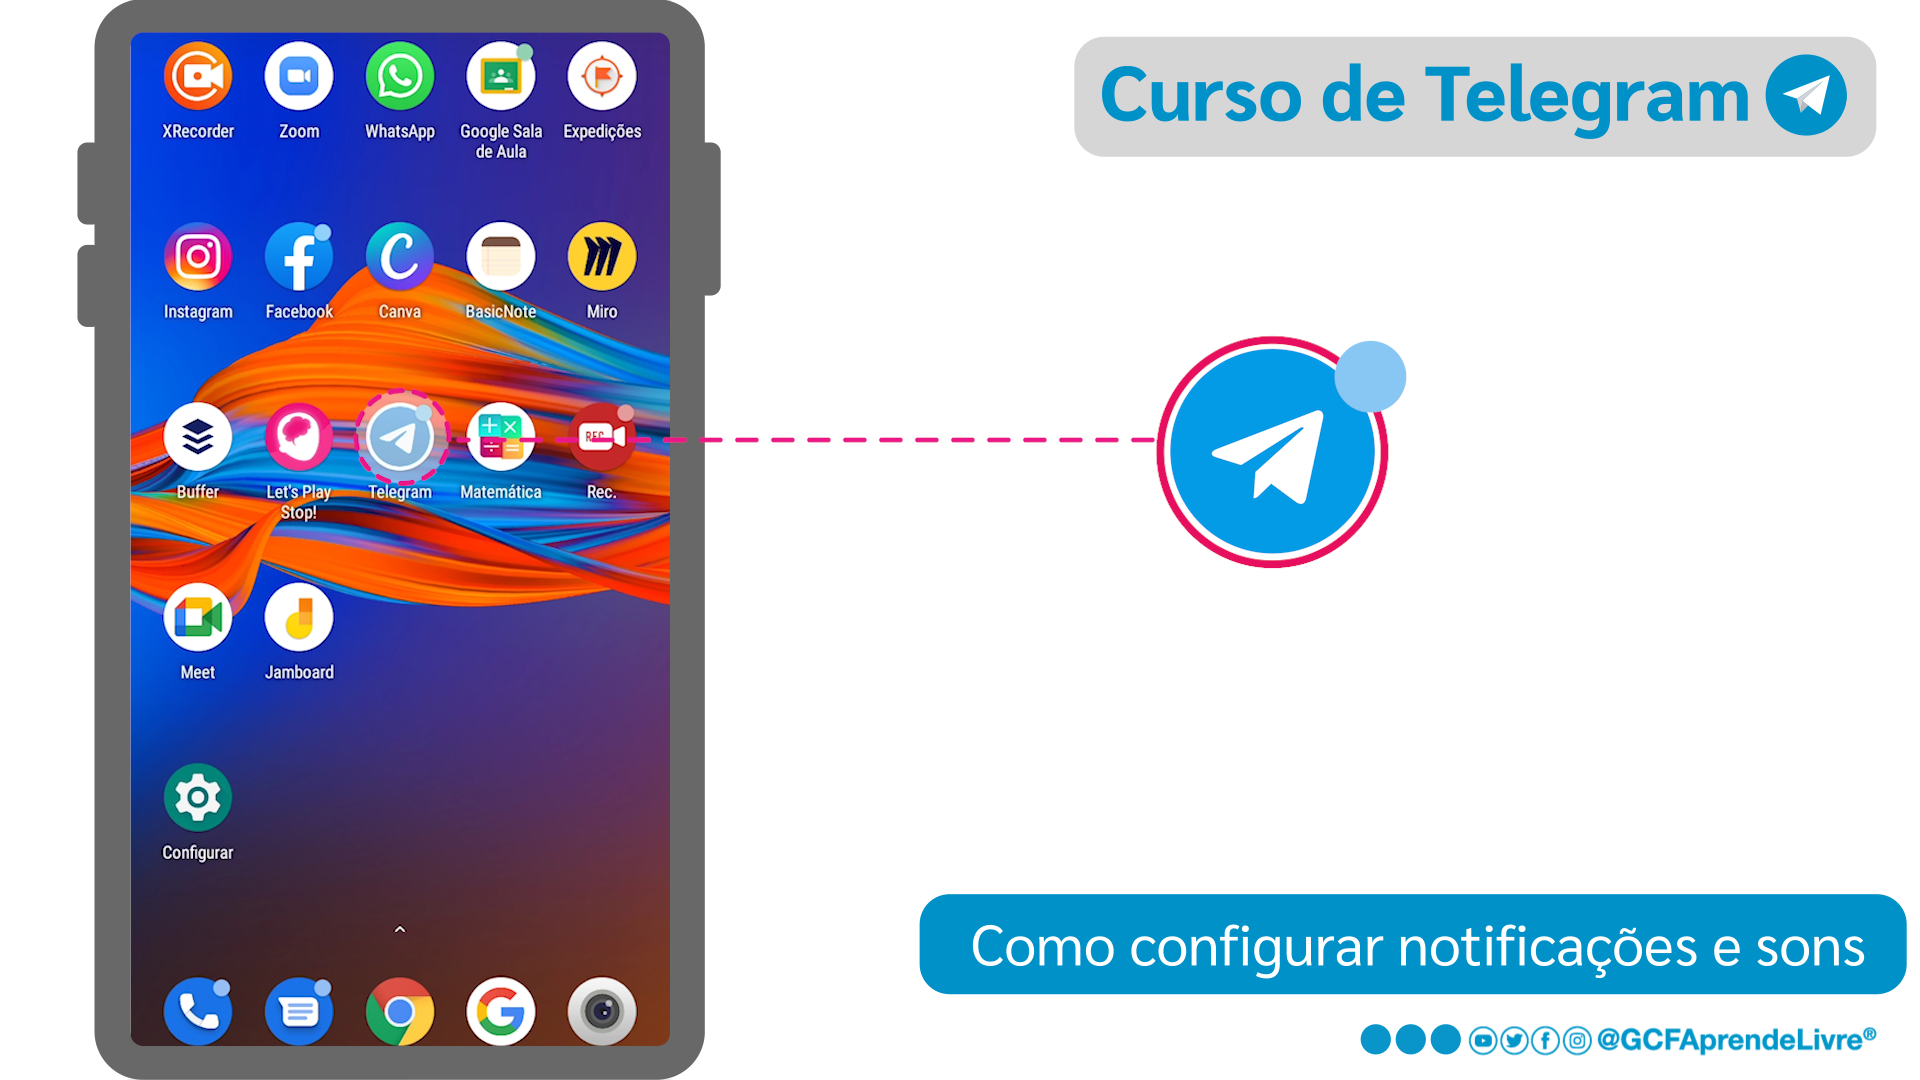 O que é a opção contador no ícone do Telegram